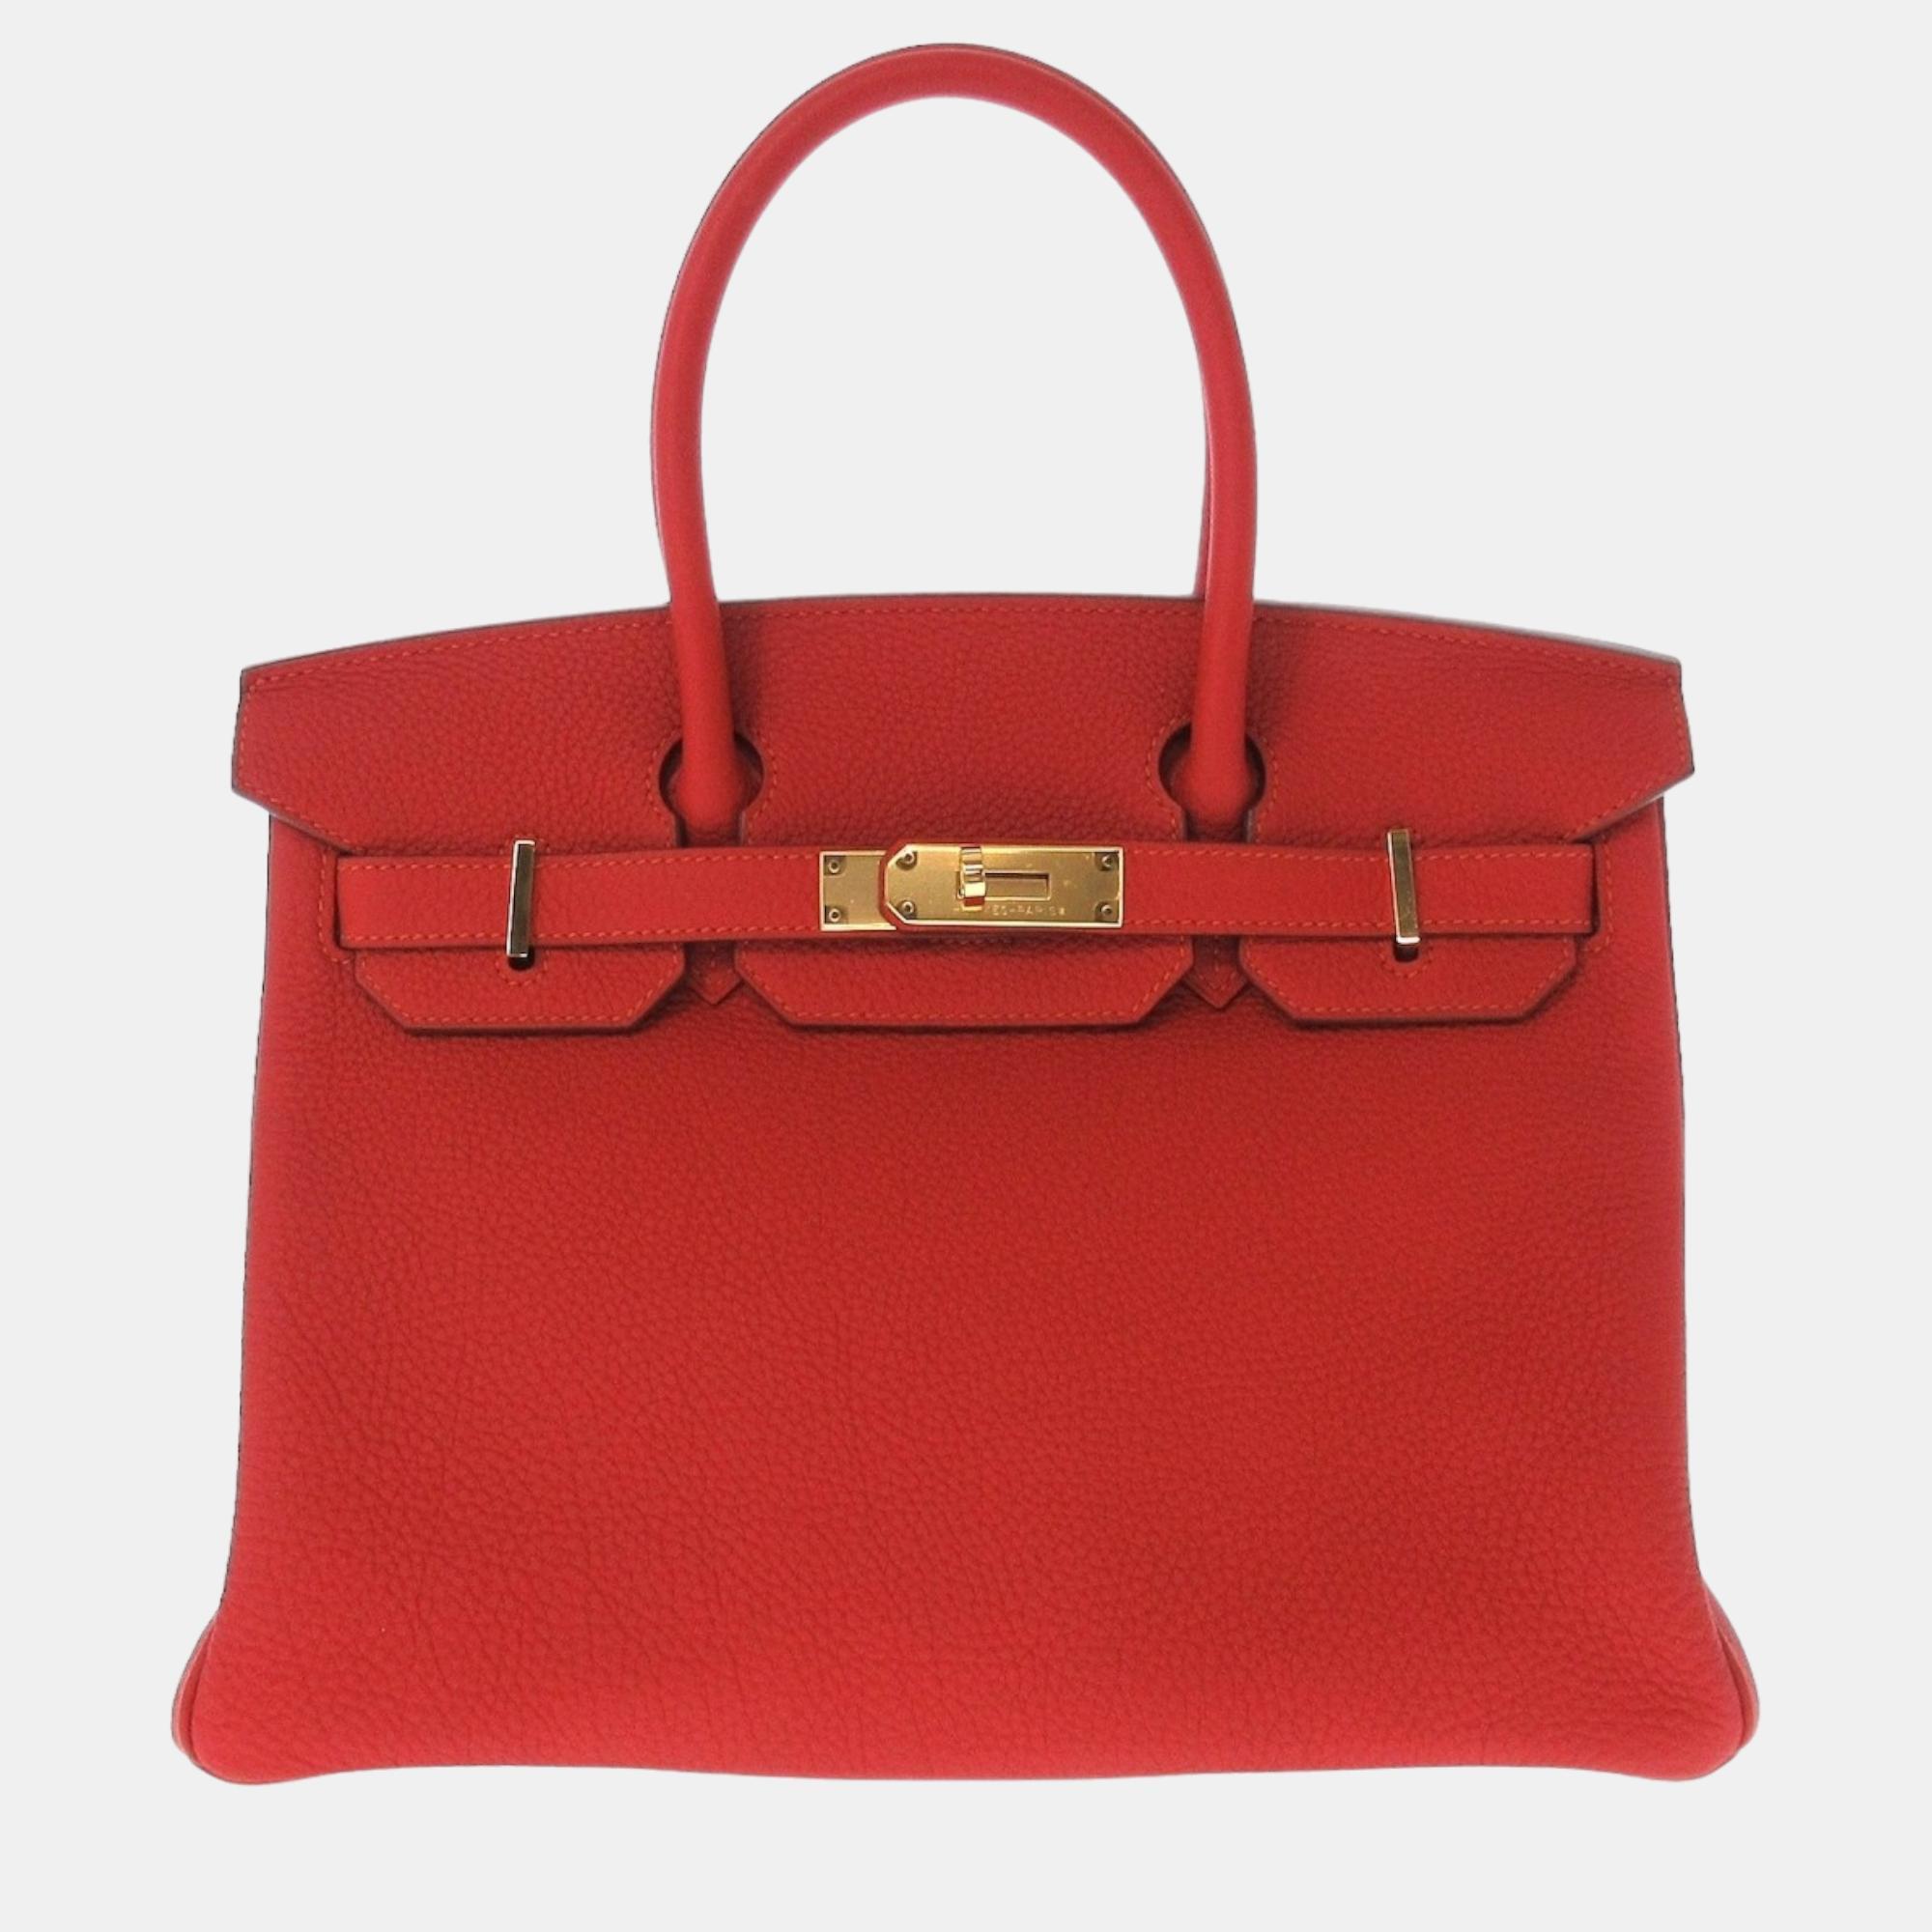 Pre-owned Hermes Red Togo Leather Gold Hardware Birkin 30 Bag